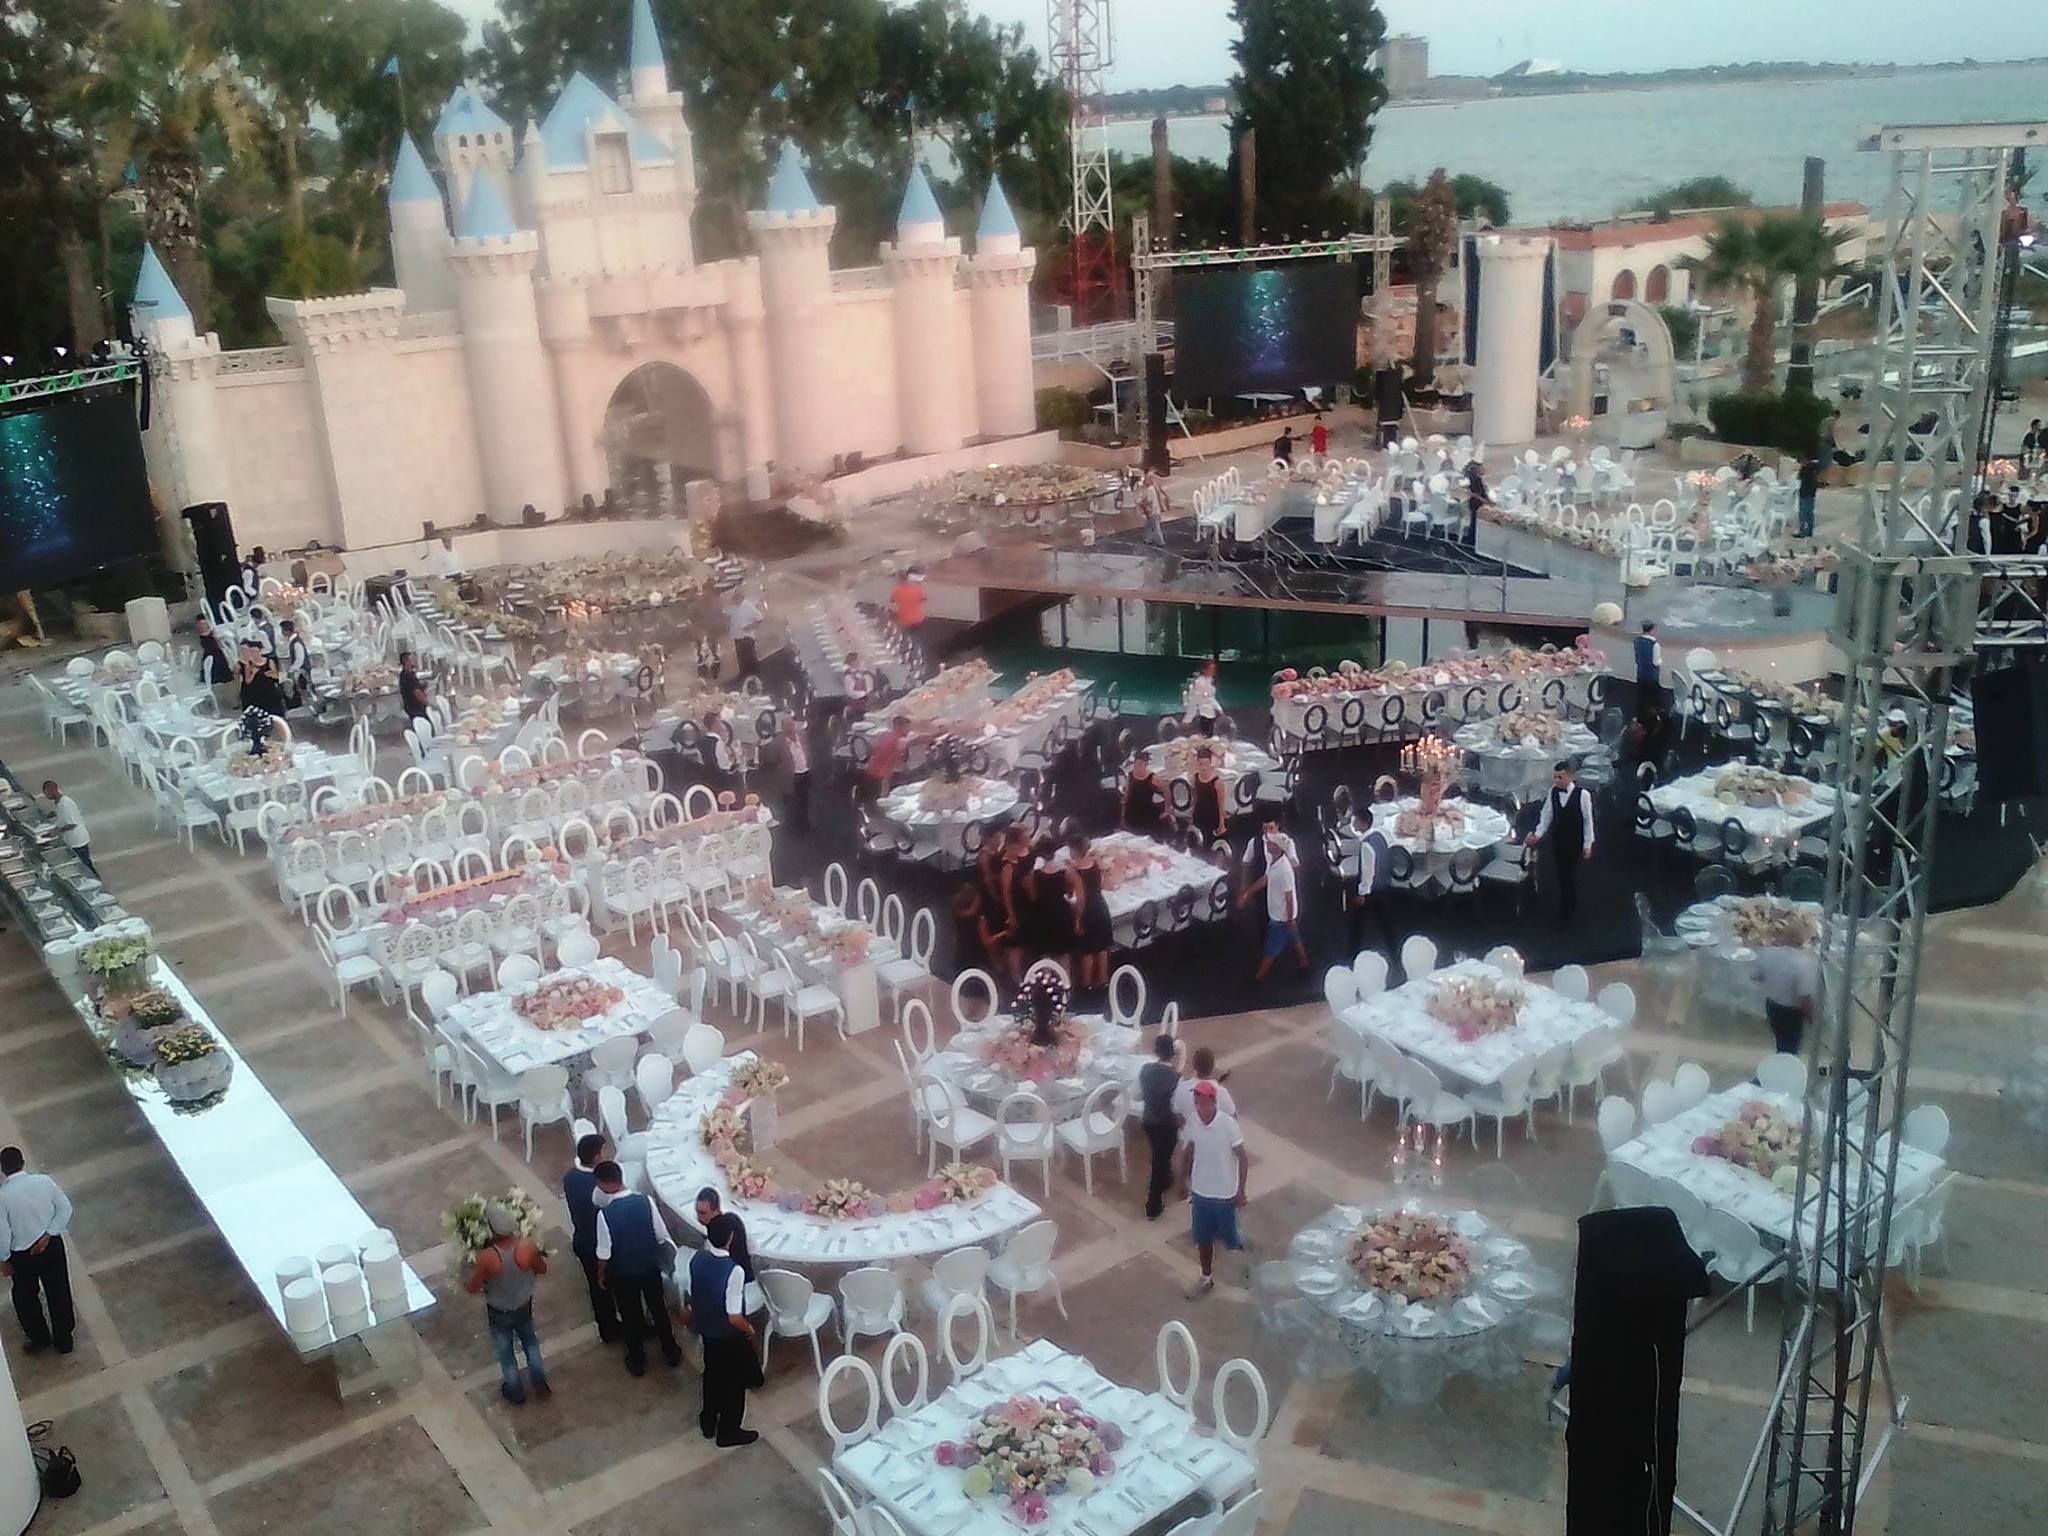 حفل زفاف كريم جود في اللاذقية - 20 تموز 2017 (لاميرا أوتيل)